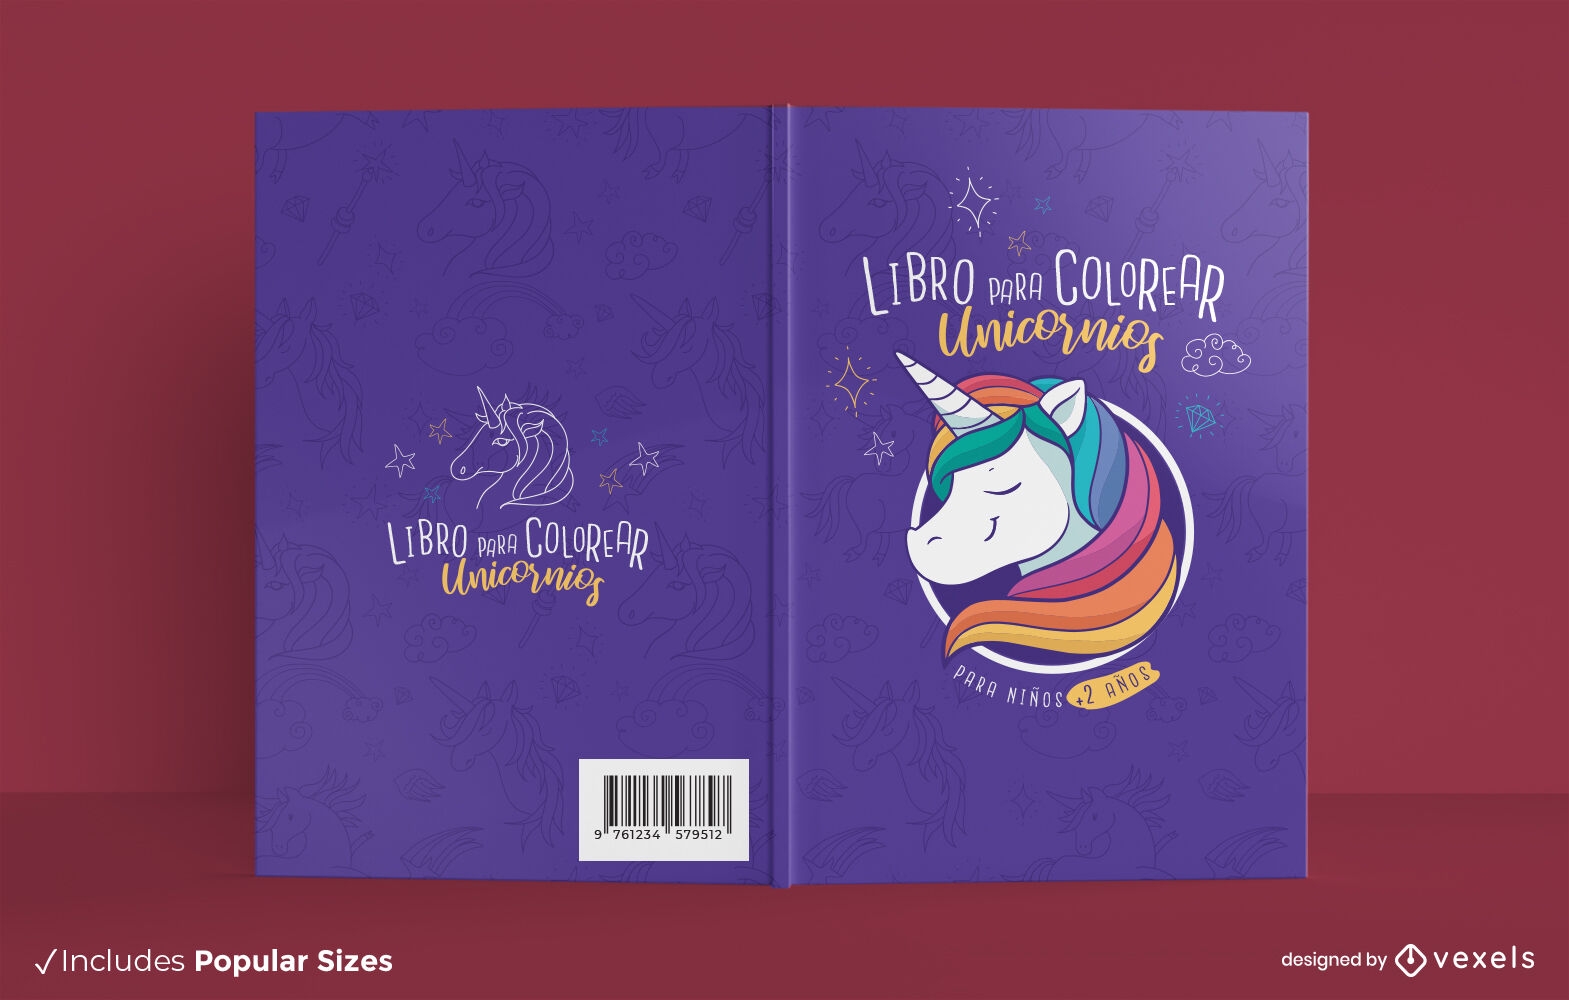 Unicorn creature coloring book cover design